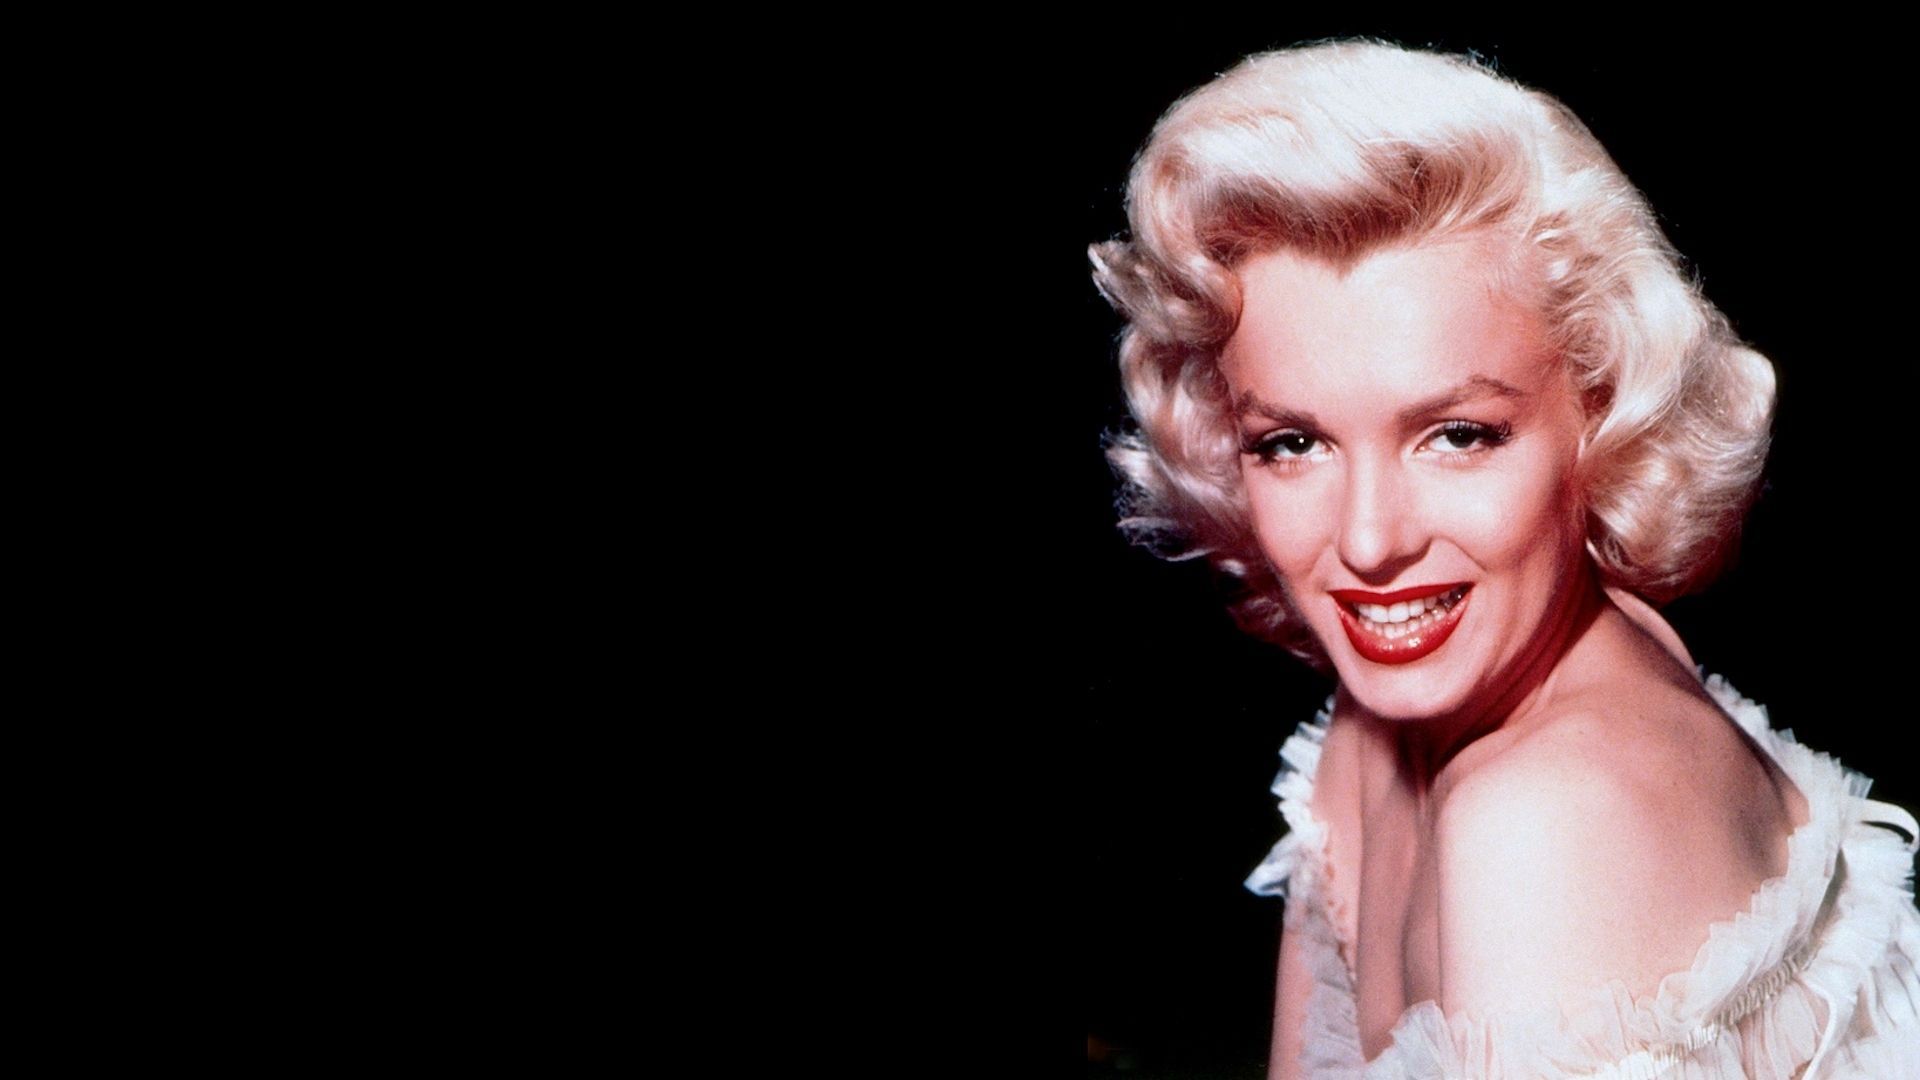 Full HD 1080p Marilyn monroe Wallpapers HD, Desktop Backgrounds ...